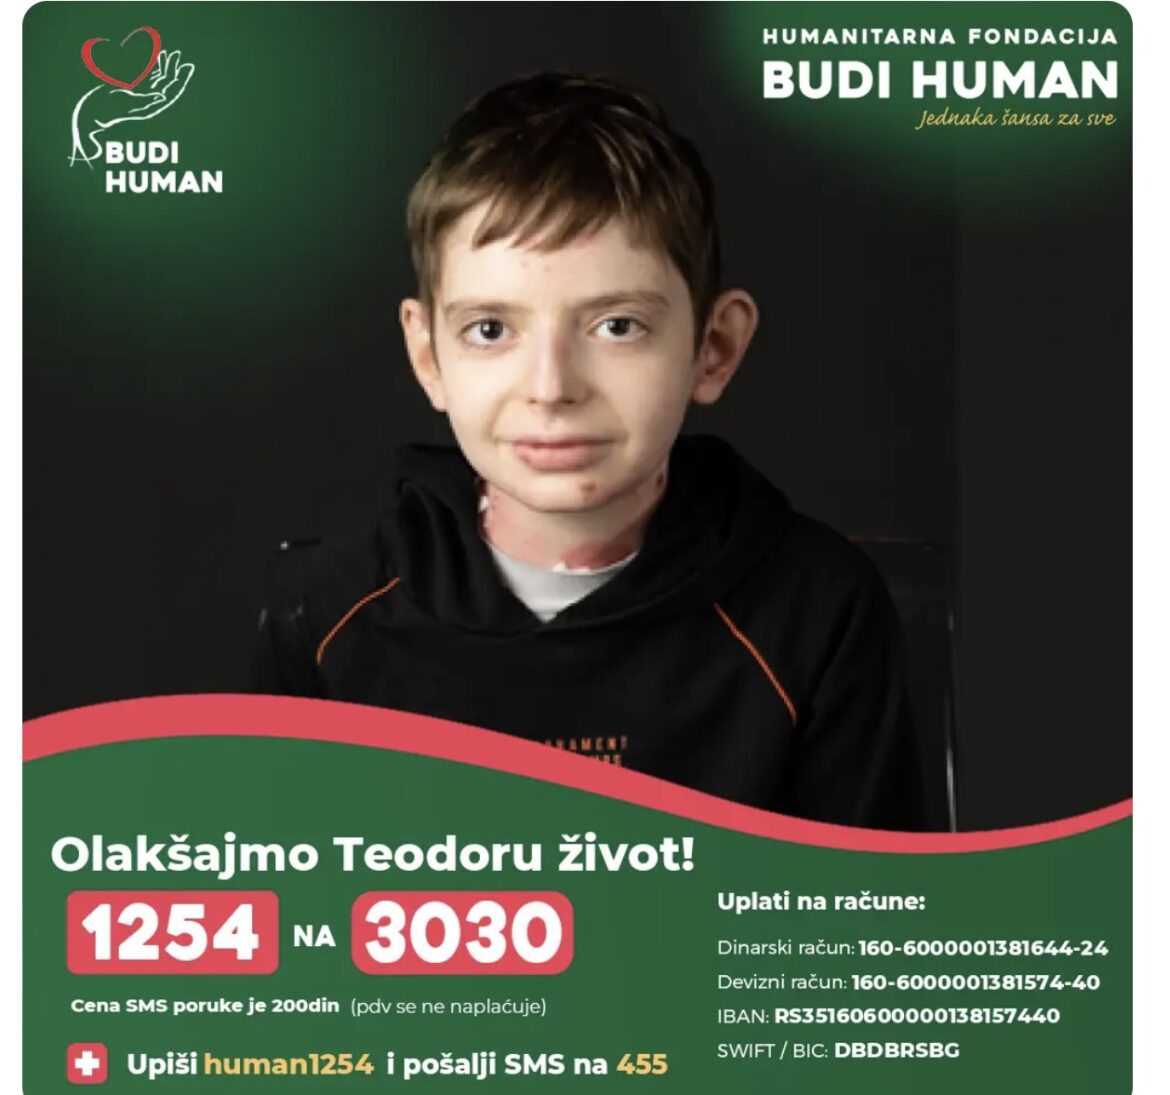 1254 NA 3030! Potrebna pomoć malom Teodoru koji boluje od teške bolesti – BIO REANIMIRAN I DVA PUTA ŽIVOTNO UGROŽEN! 